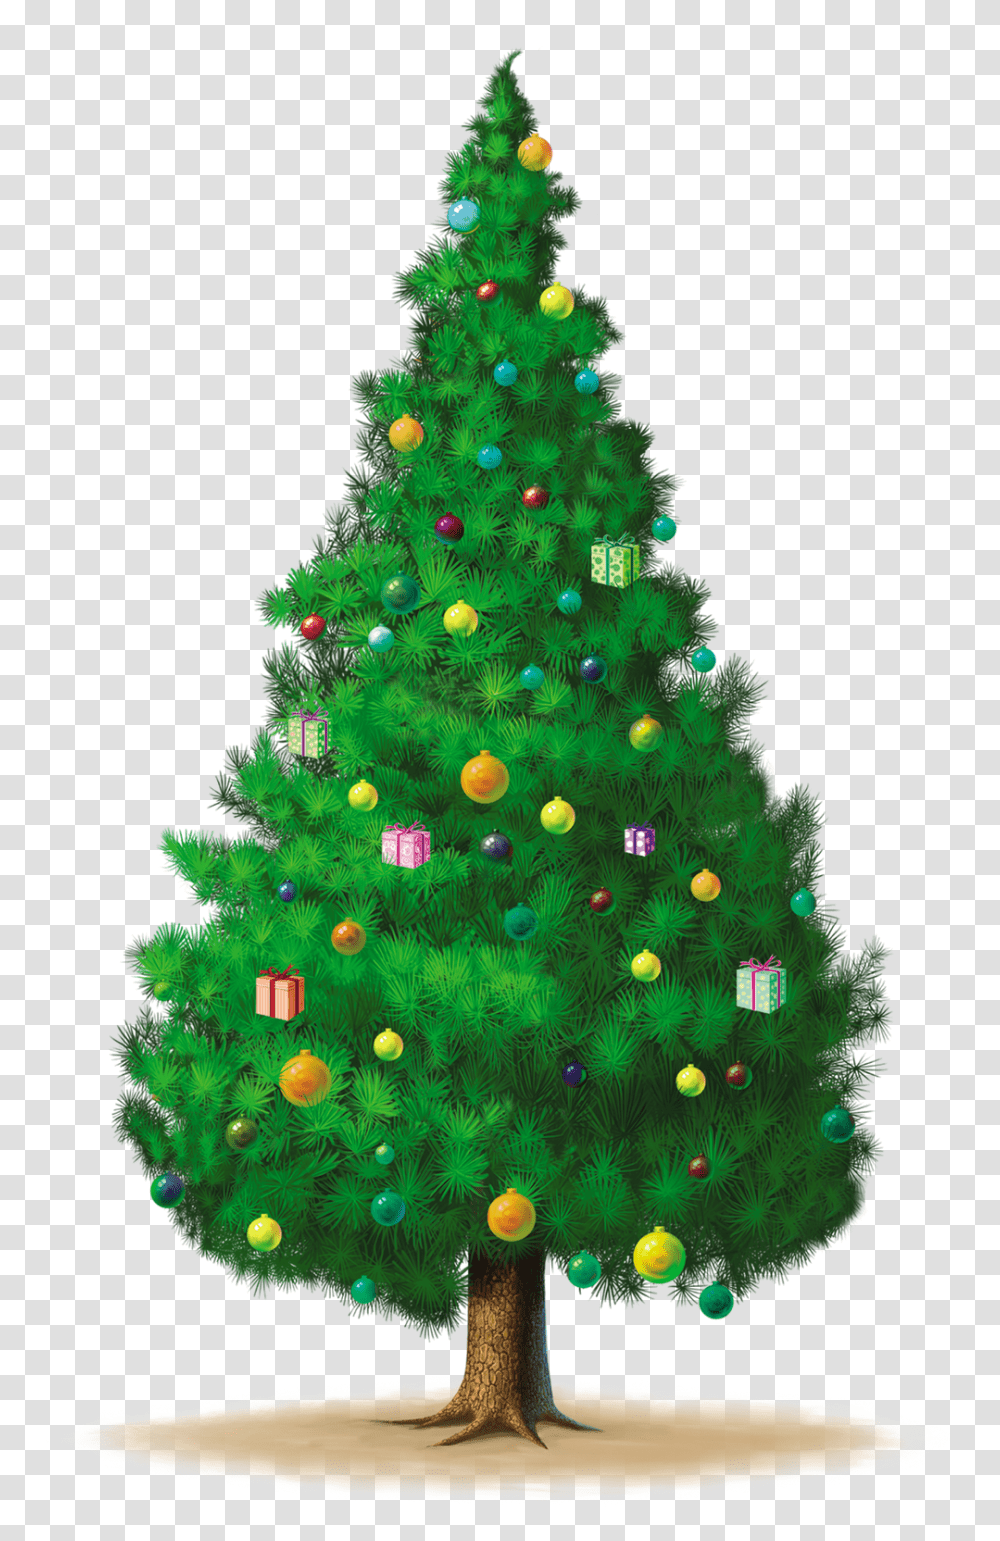 De Nuria D Publicado En Gifs De Arboles De Navidad Christmas Tree, Ornament, Plant Transparent Png